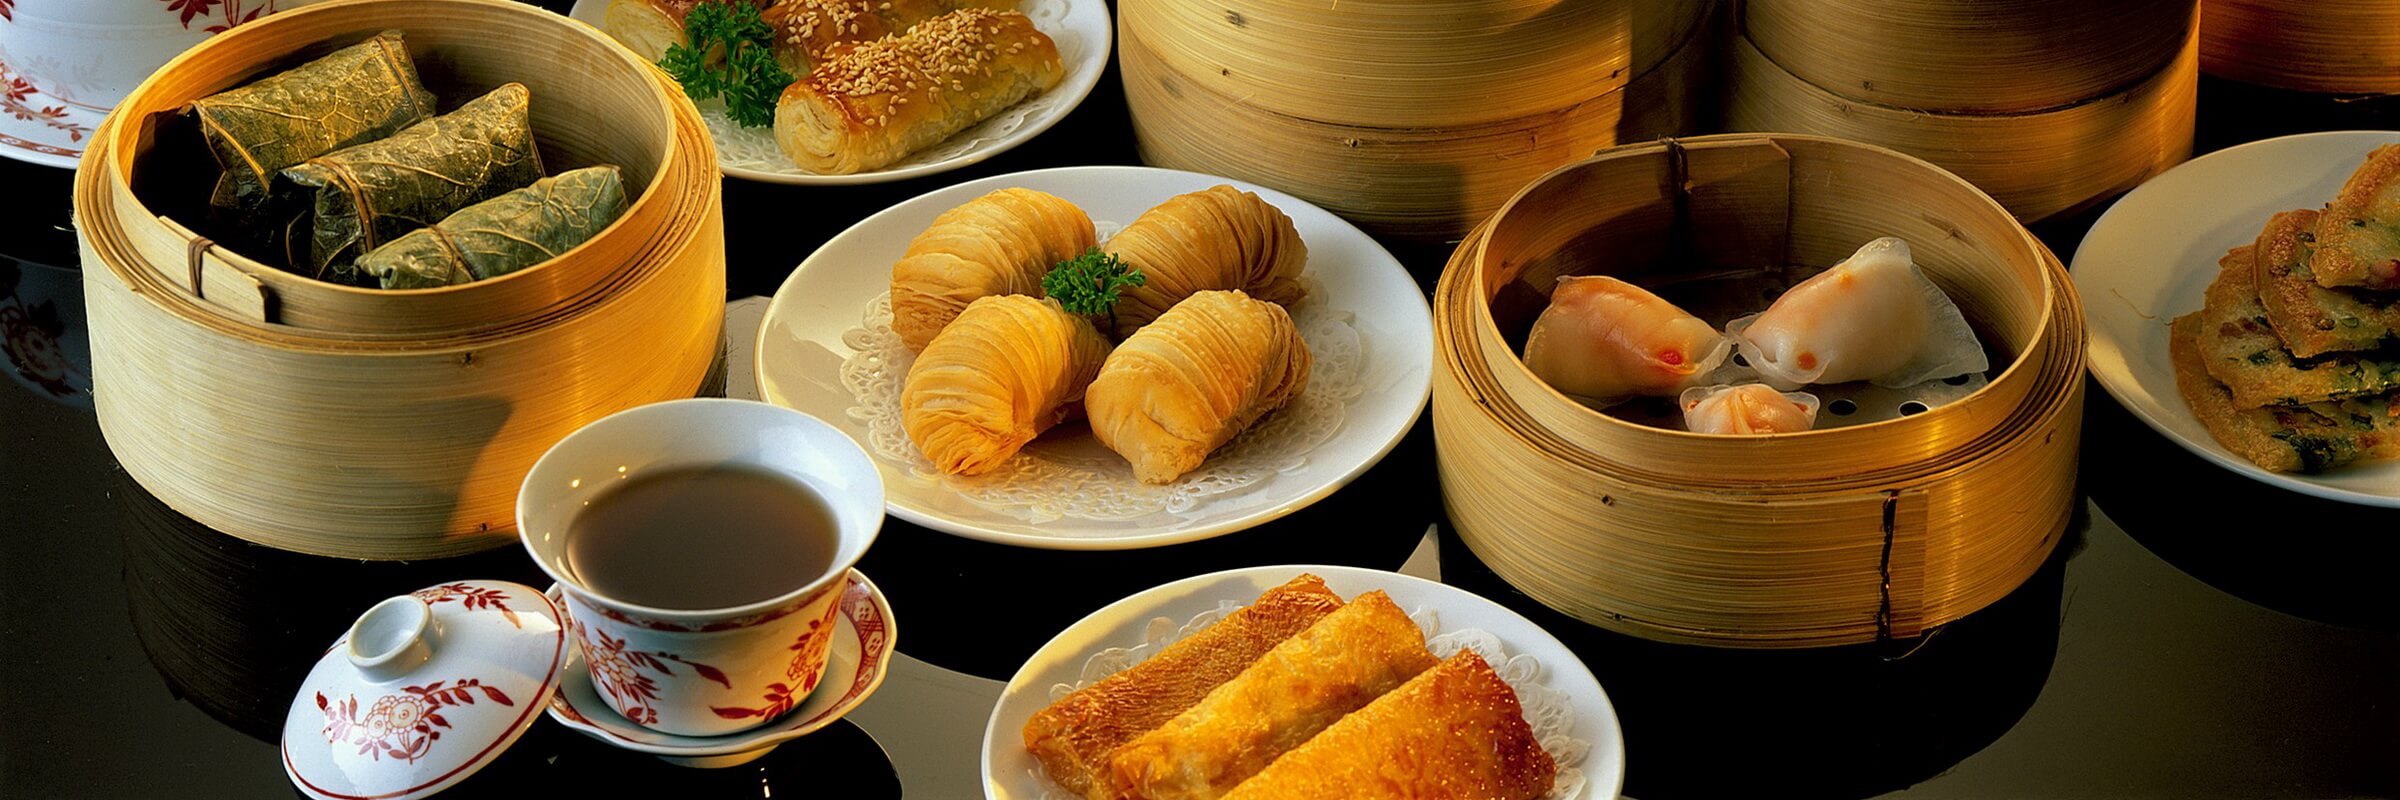 Dim Sum ist eine chinesische Spezialität, welche häufig als kleine Häppchen in Bambusschalen zum Tee serviert wird.